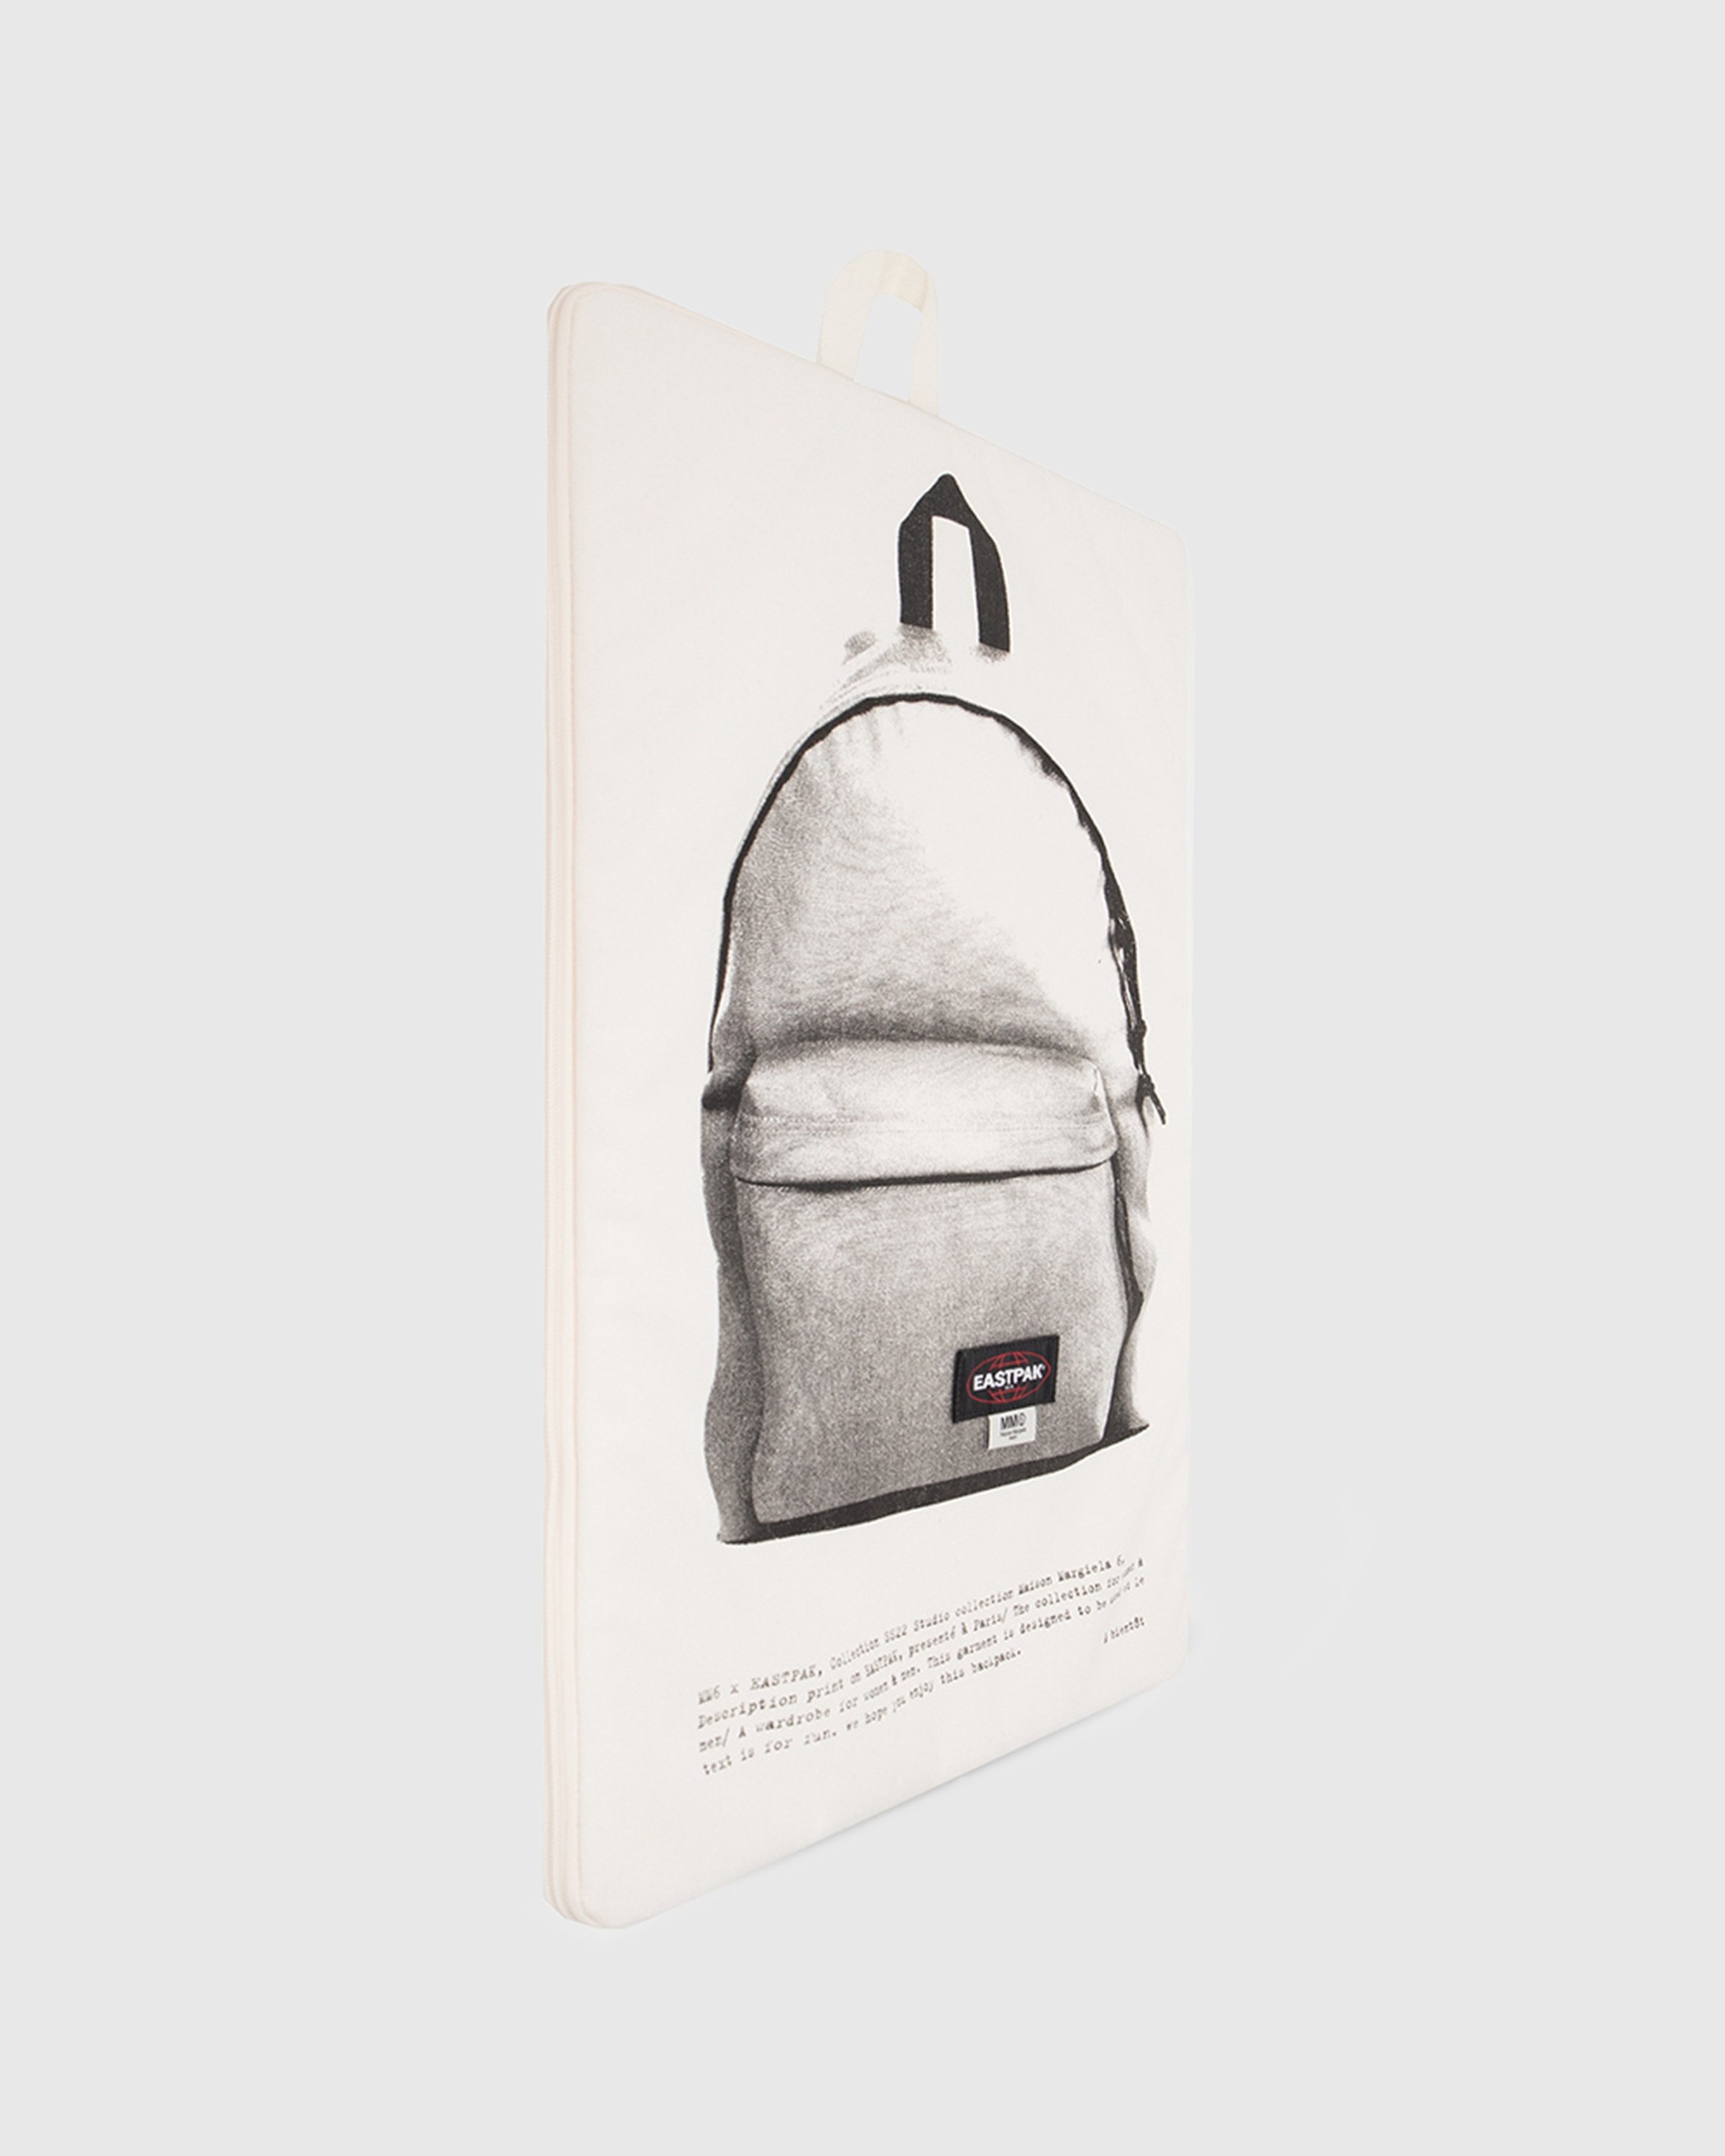 MM6 Maison Margiela x Eastpak – Zaino Backpack Whisper White - Backpacks - White - Image 2